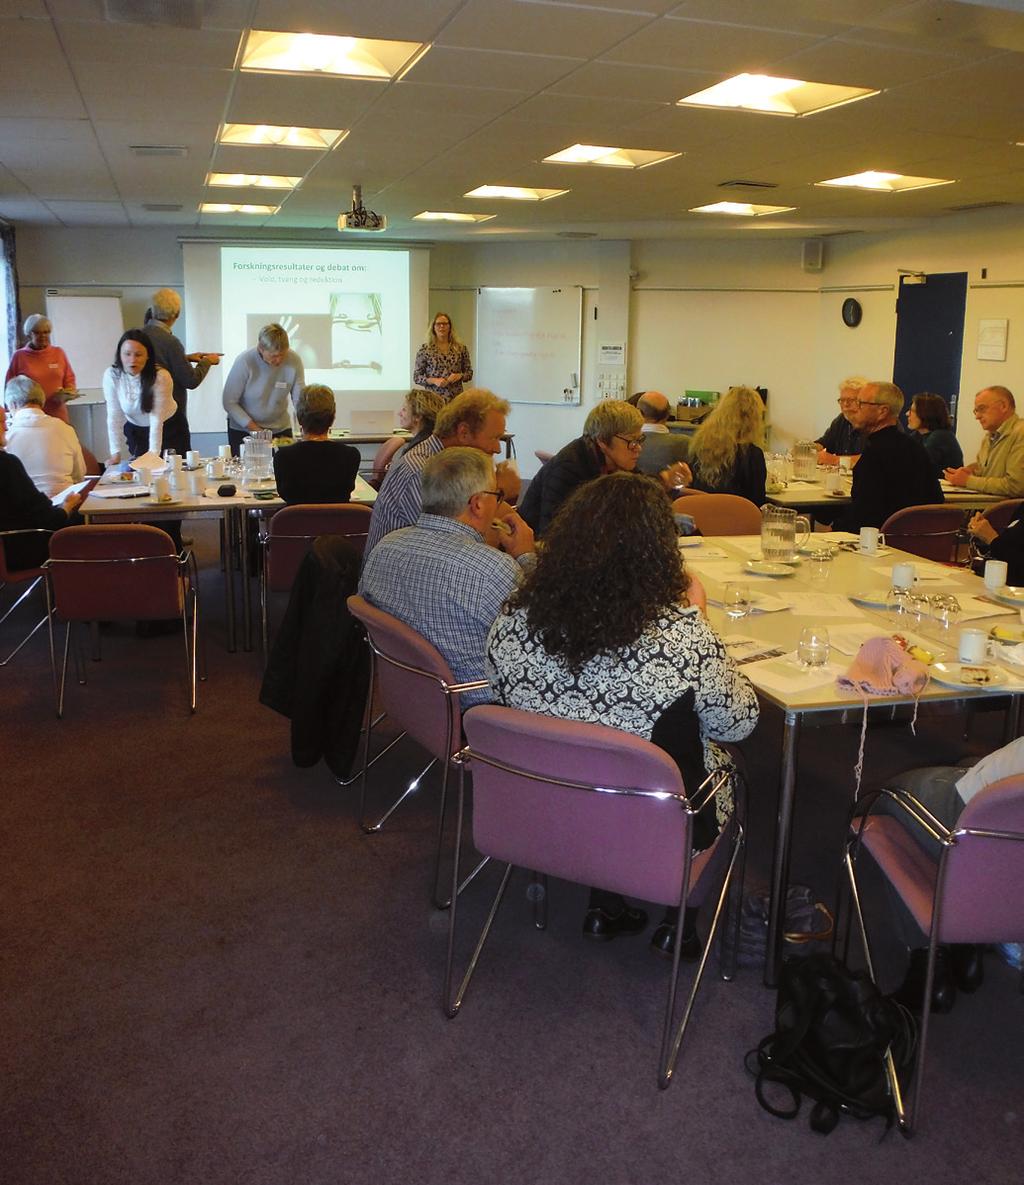 LPD Fortsætterkursus i Løgstør I weekenden den 10. 12. november 2017 holdt LPD kursus for fortsættere i Løgstør.